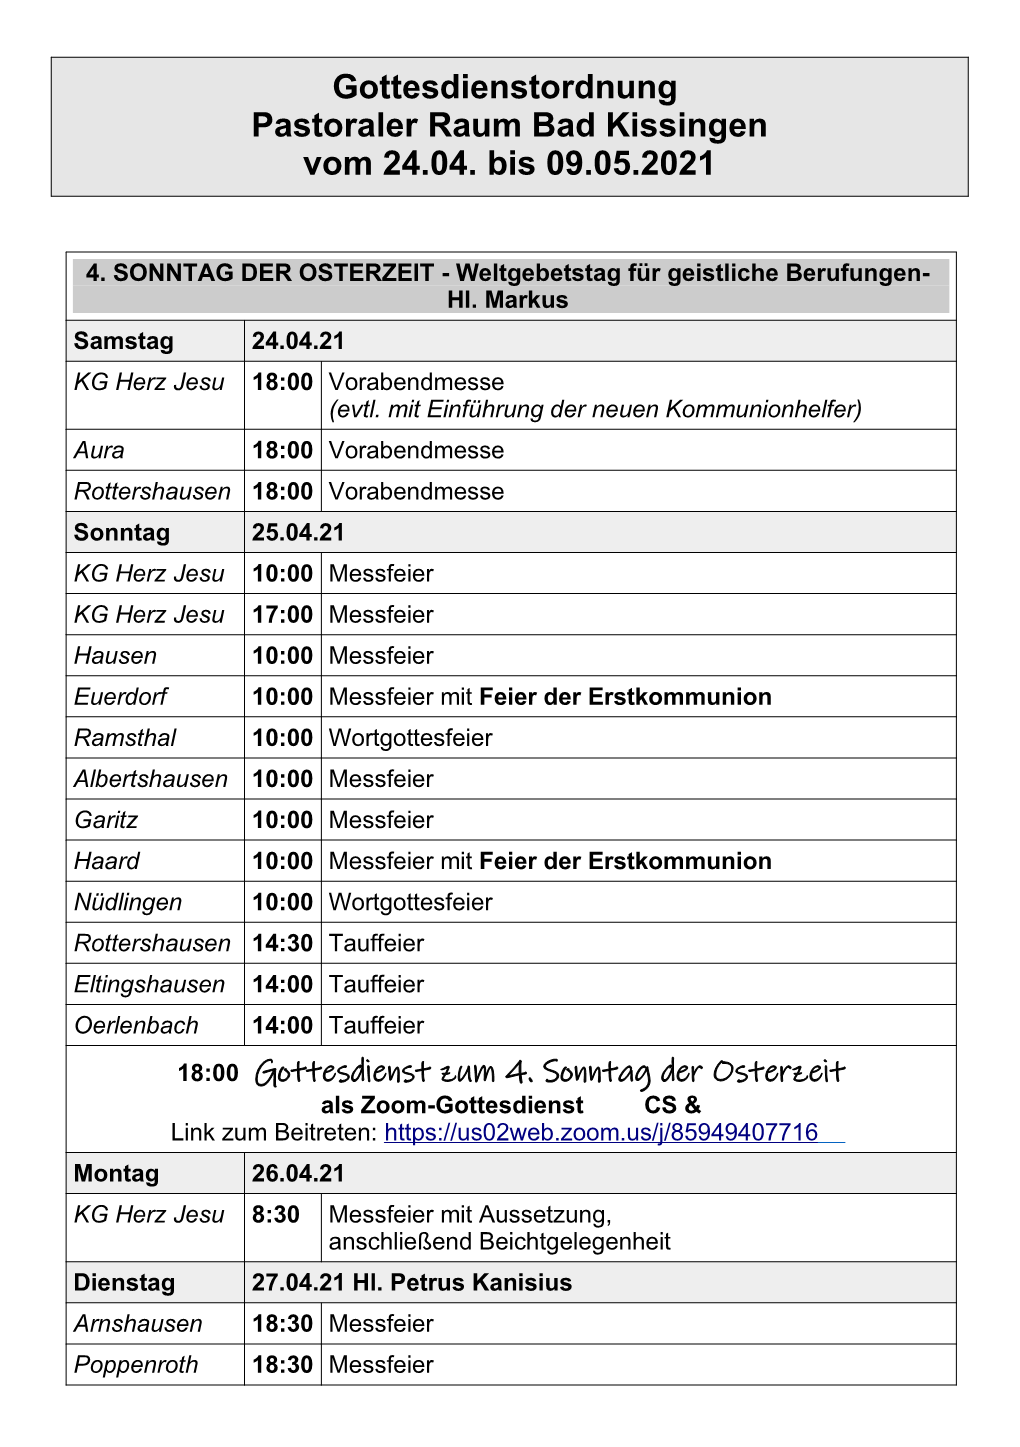 Gottesdienstordnung Pastoraler Raum Bad Kissingen Vom 24.04